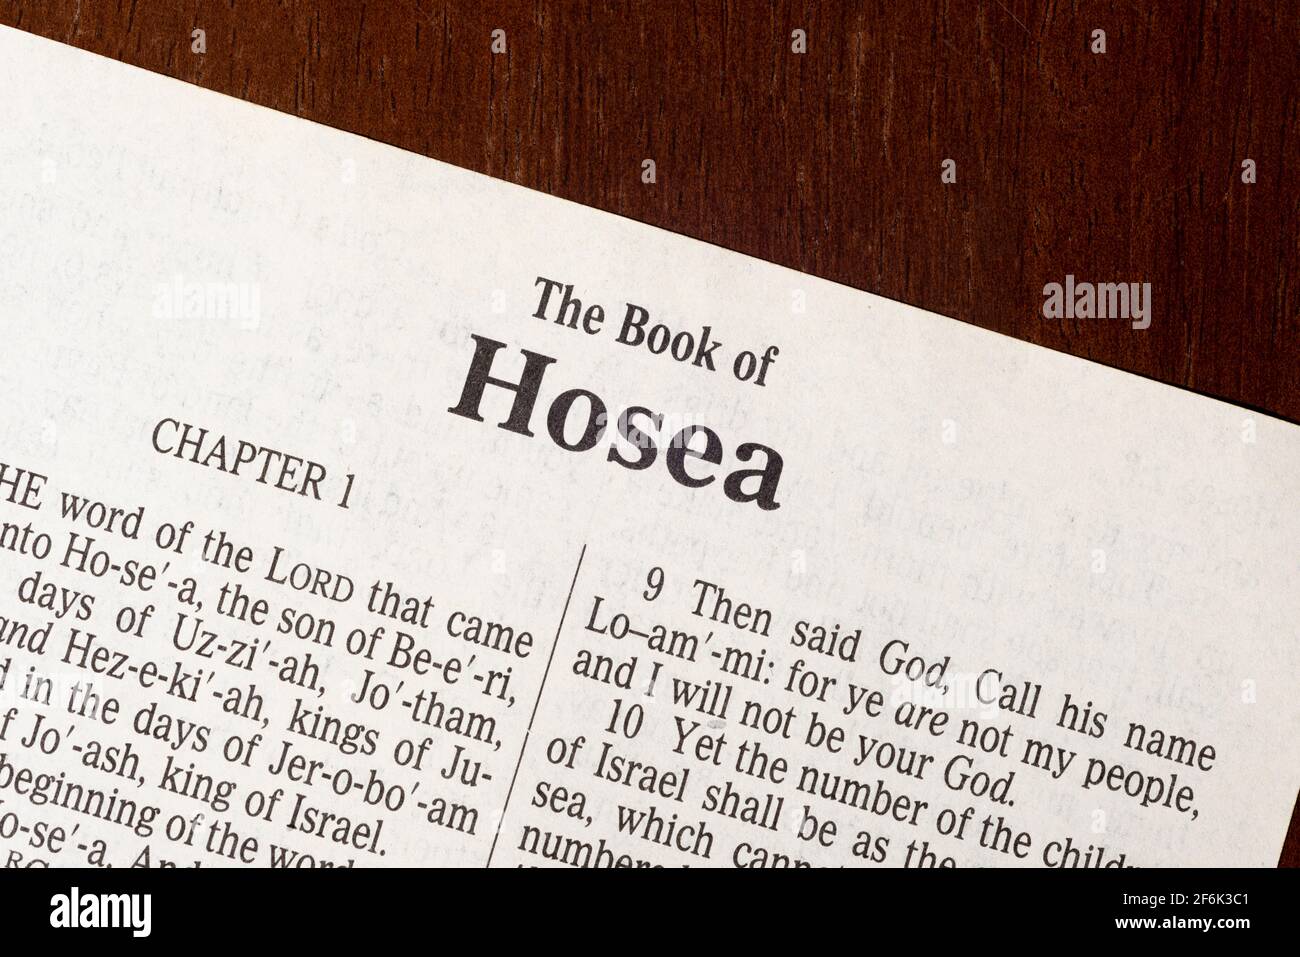 Dies ist die King James Bibel, die 1611 übersetzt wurde. Es gibt keine Urheberrechte. Titelseite des Buches Hosea Stockfoto